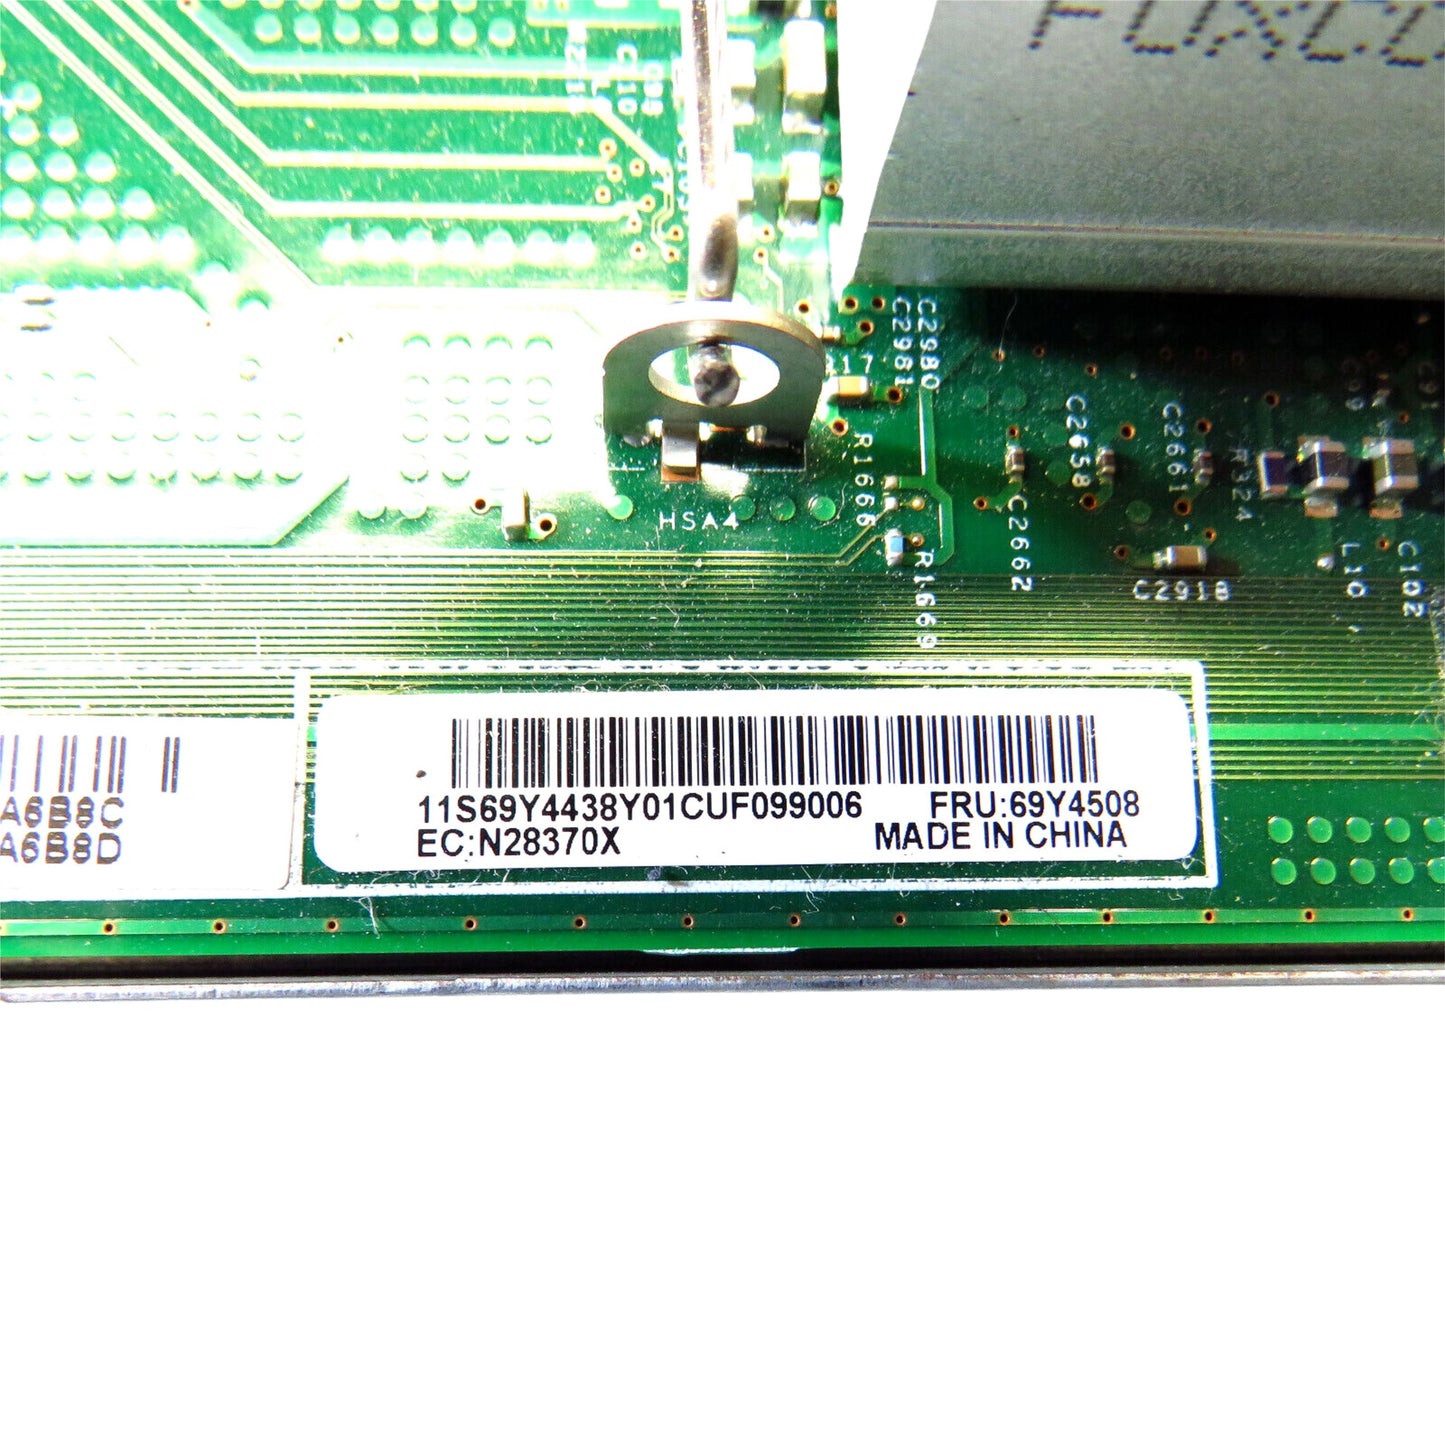 IBM 69Y4508 LGA1366 X3650 M3 System Board Motherboard (Refurbished)